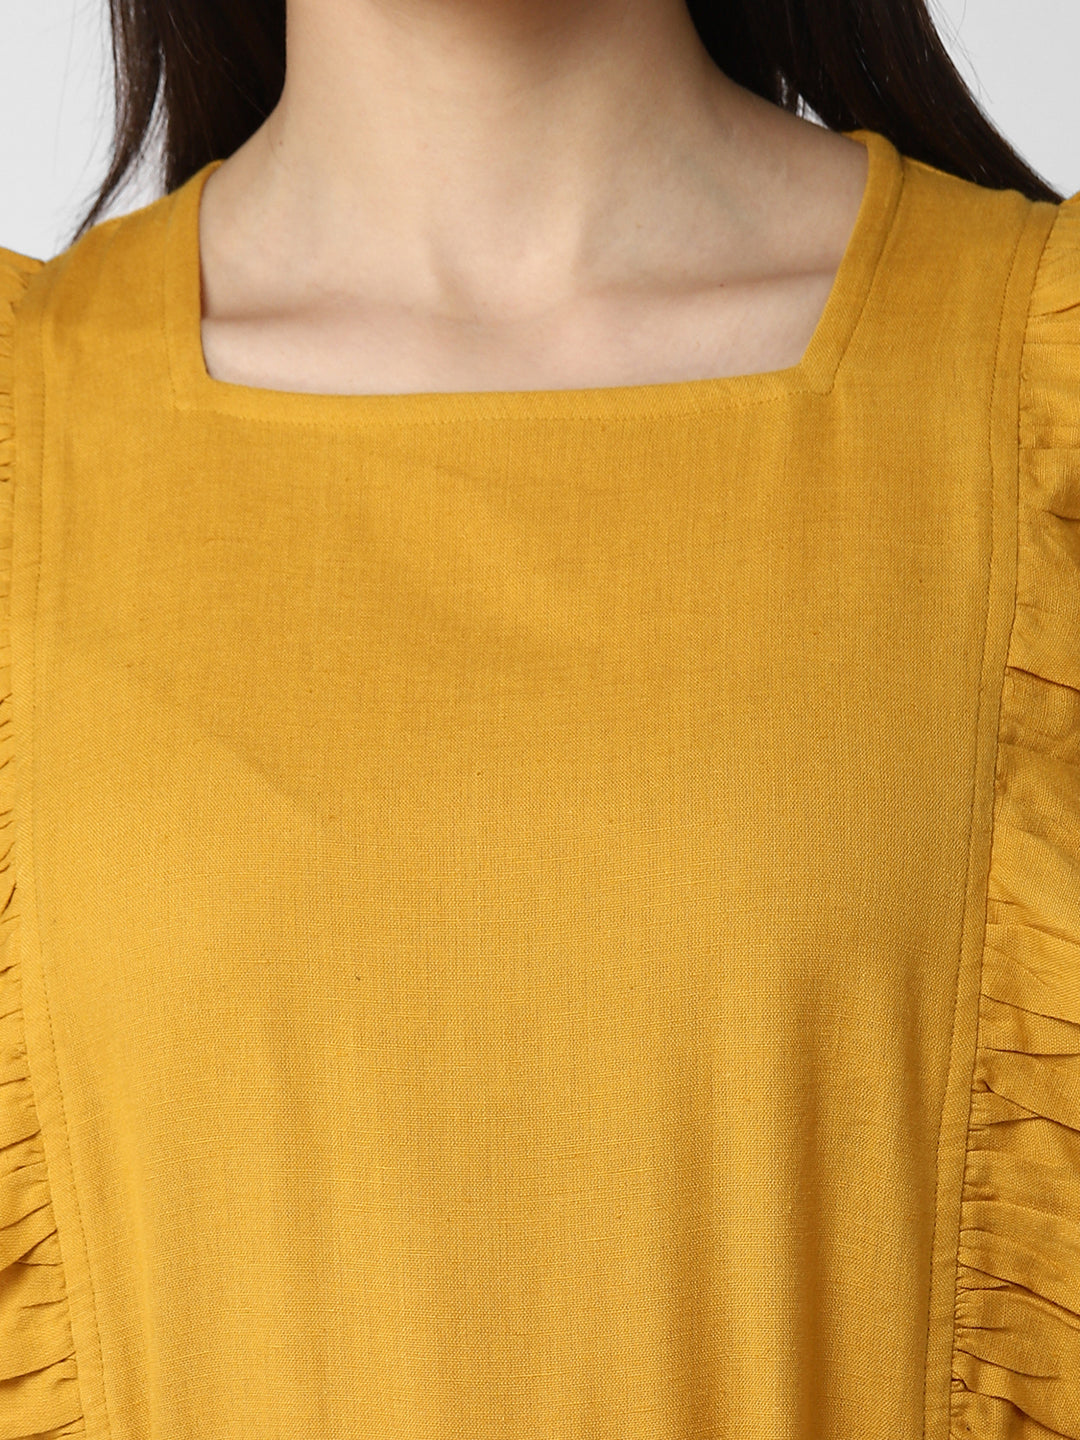 Women's Cotton Linen Yellow Jumpsuit